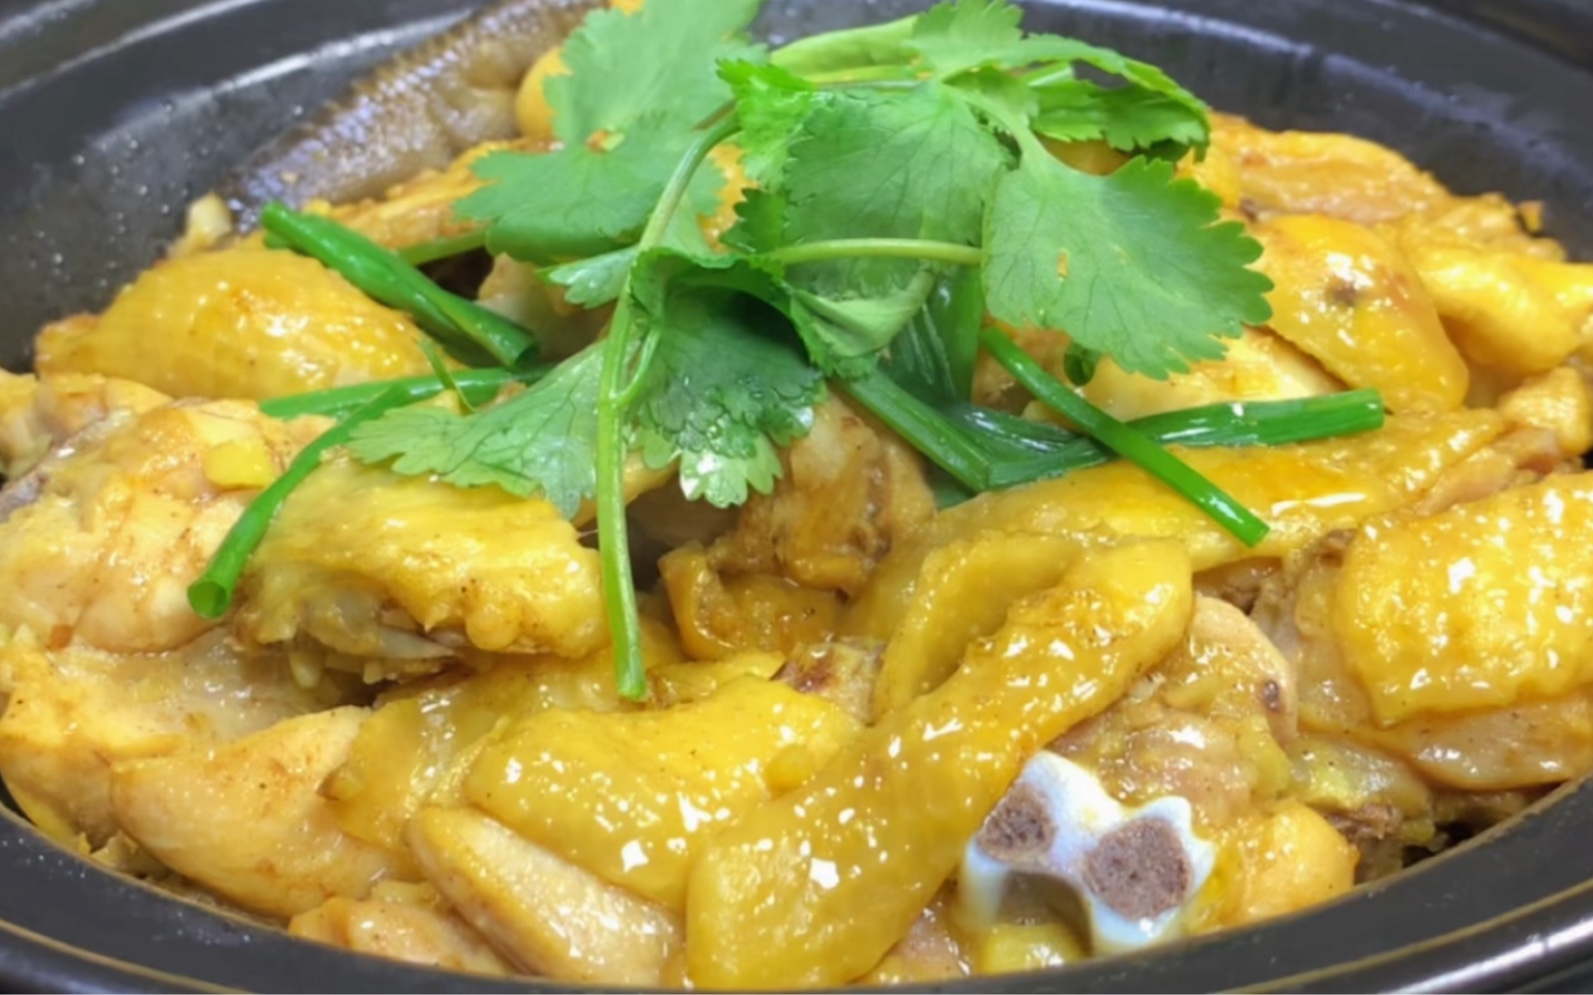 沙姜焗鸡,广东家常菜做法,制作简单速度快,鸡肉鲜嫩超好吃